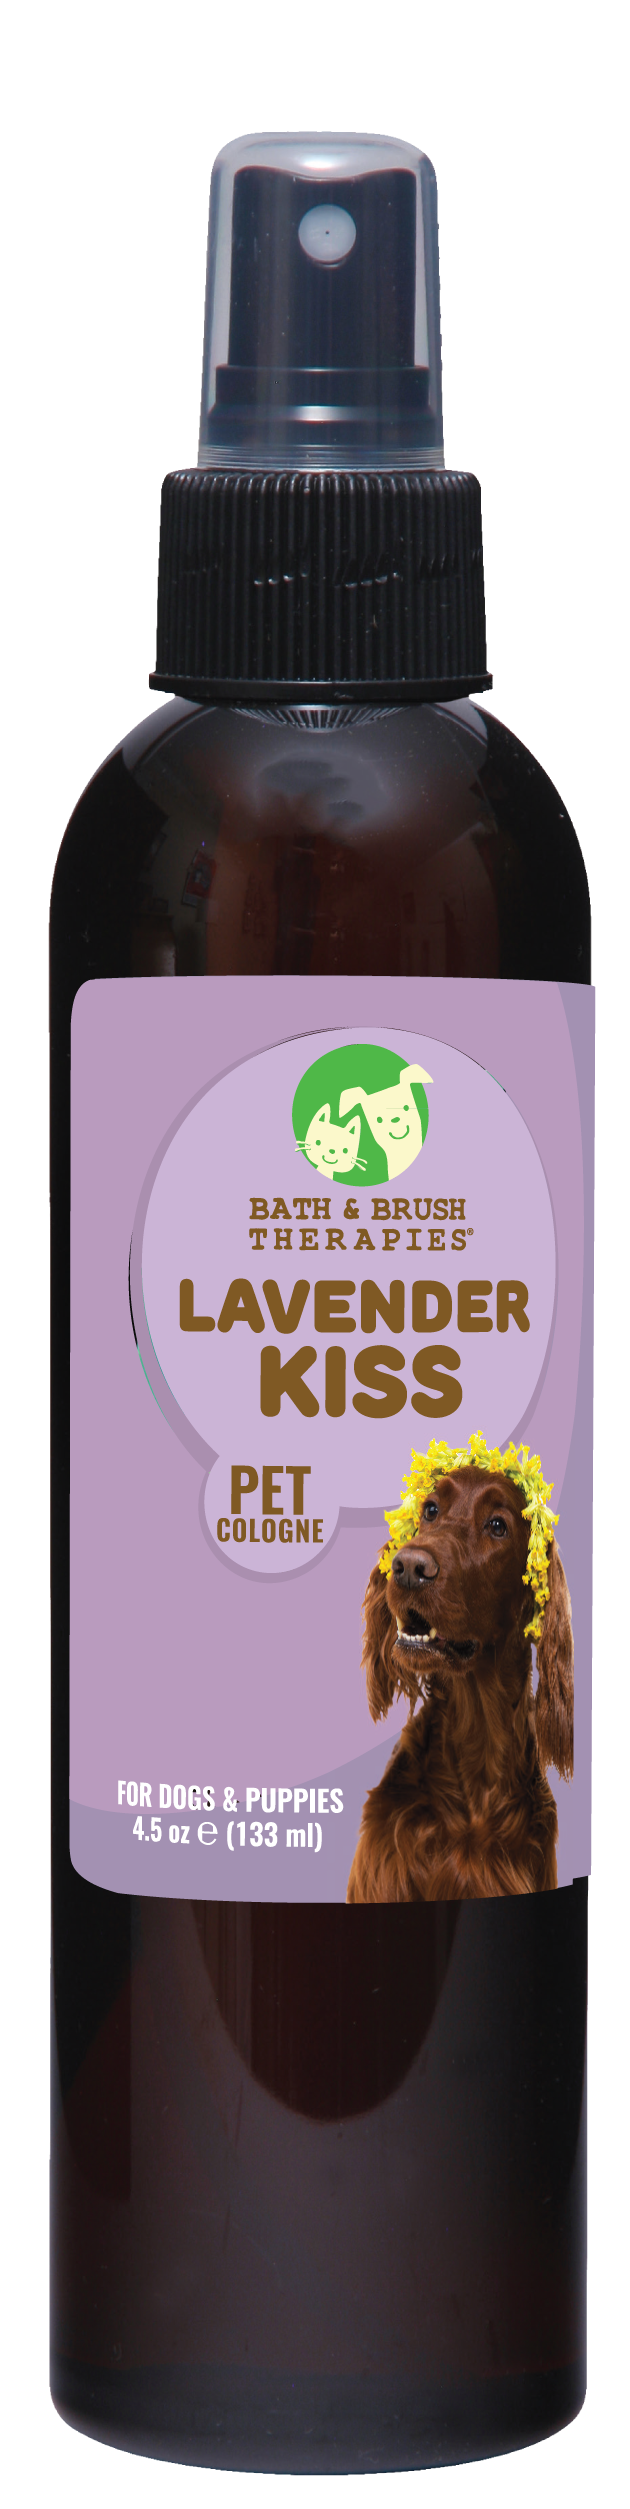 Lavender Kiss Pet Cologne